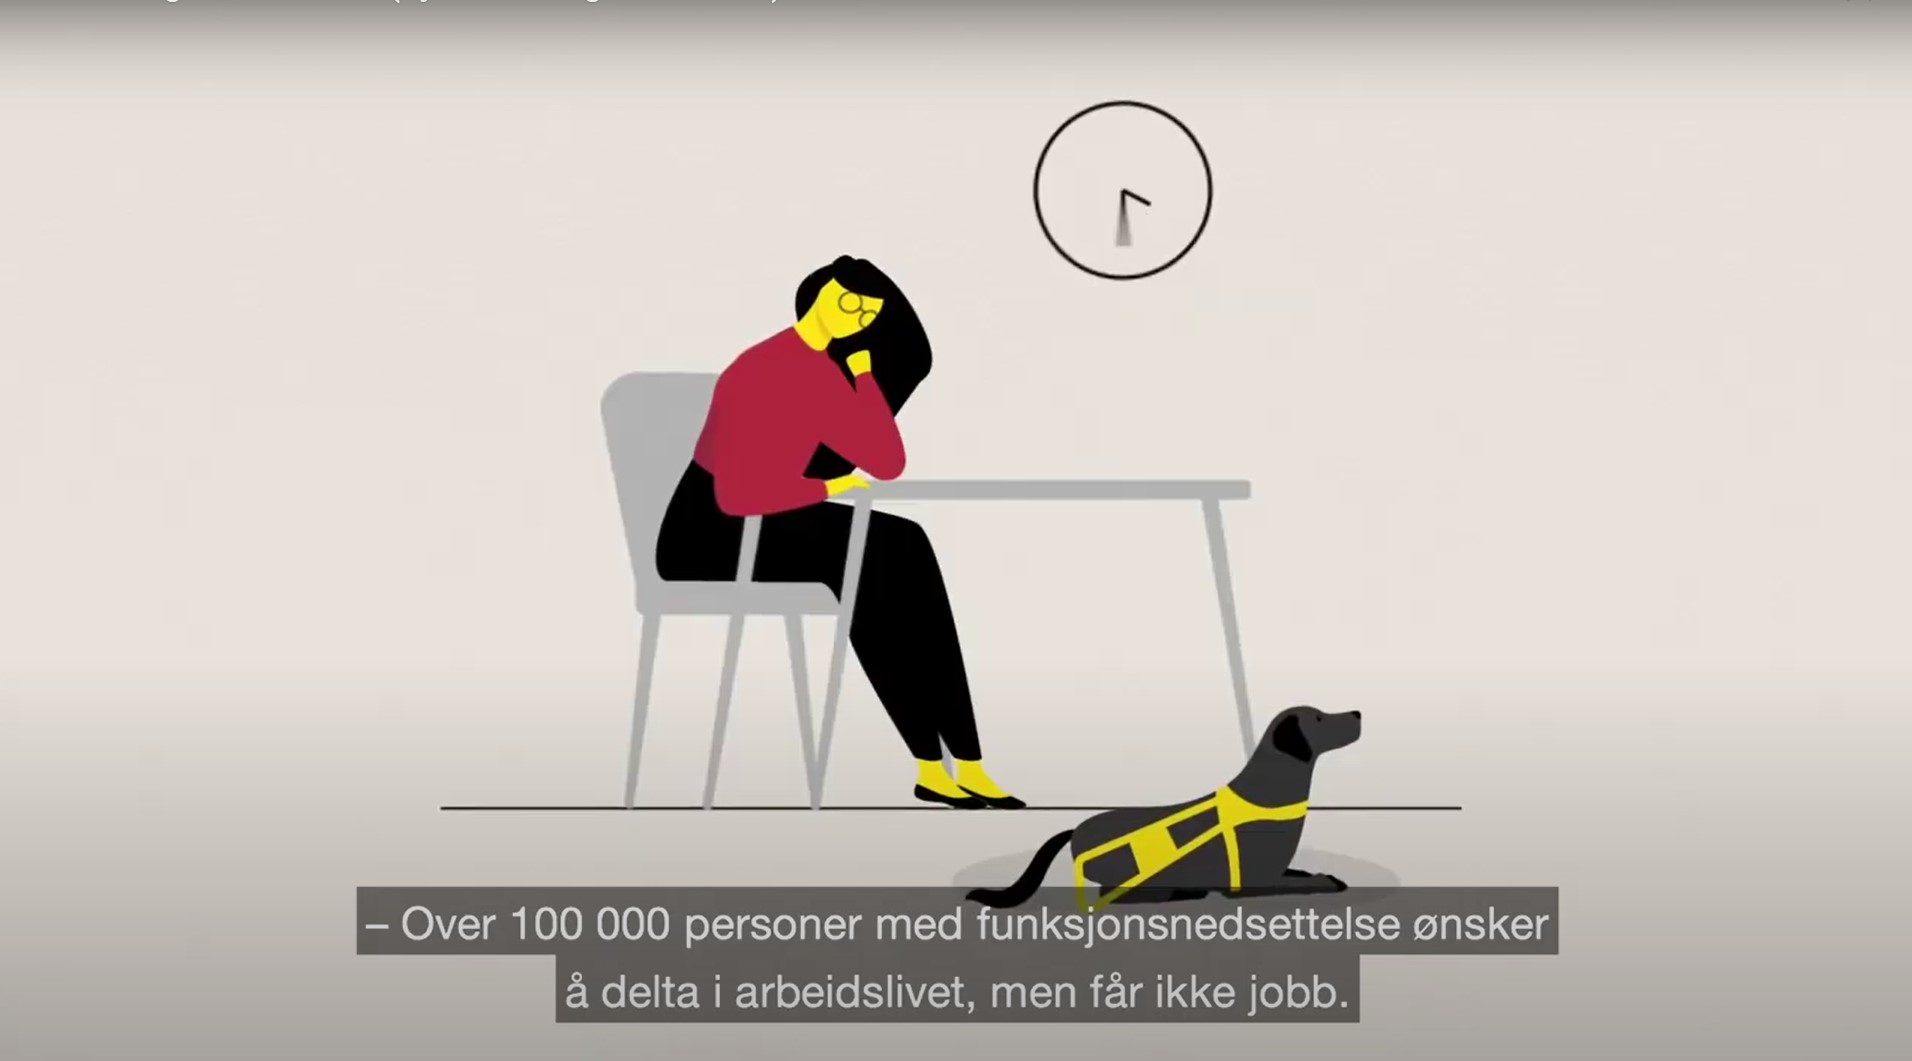 Skjermdump fra animasjonsfilm om inkludering i arbeidslivet. Kvinne sitter ved et bord, førerhund, tekst: 100 000 personer med funksjonsnedsettelse ønsker å delta i arbeidslivet, men får ikke jobb.